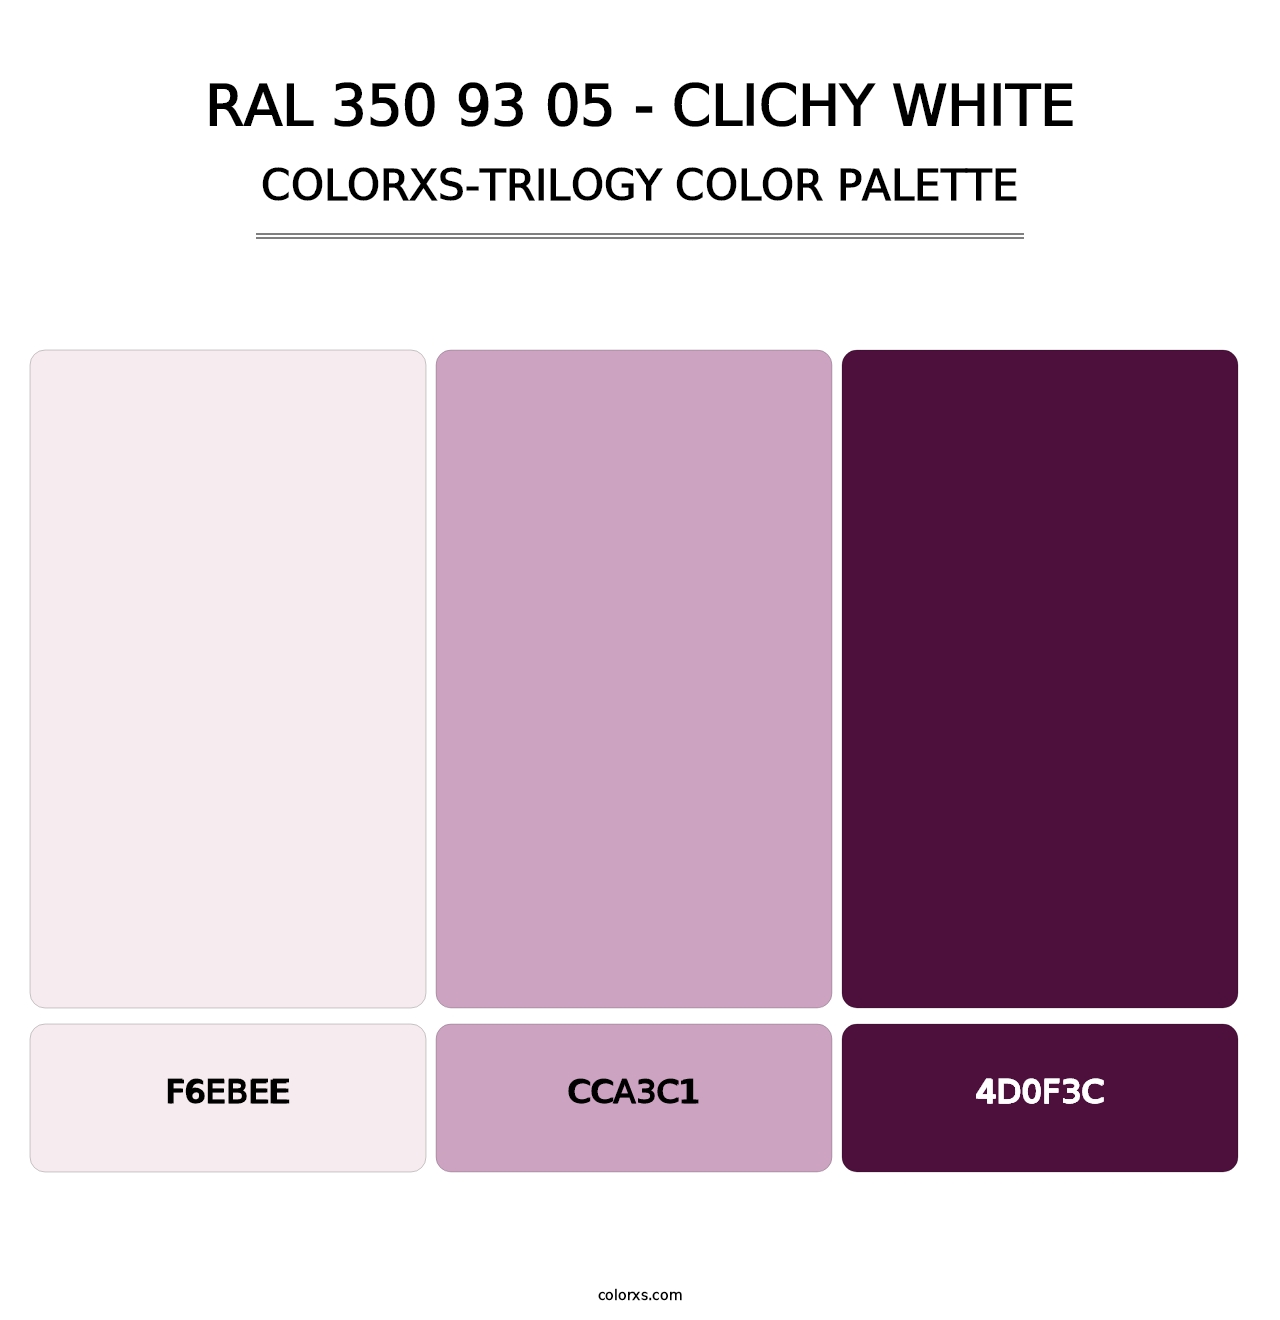 RAL 350 93 05 - Clichy White - Colorxs Trilogy Palette